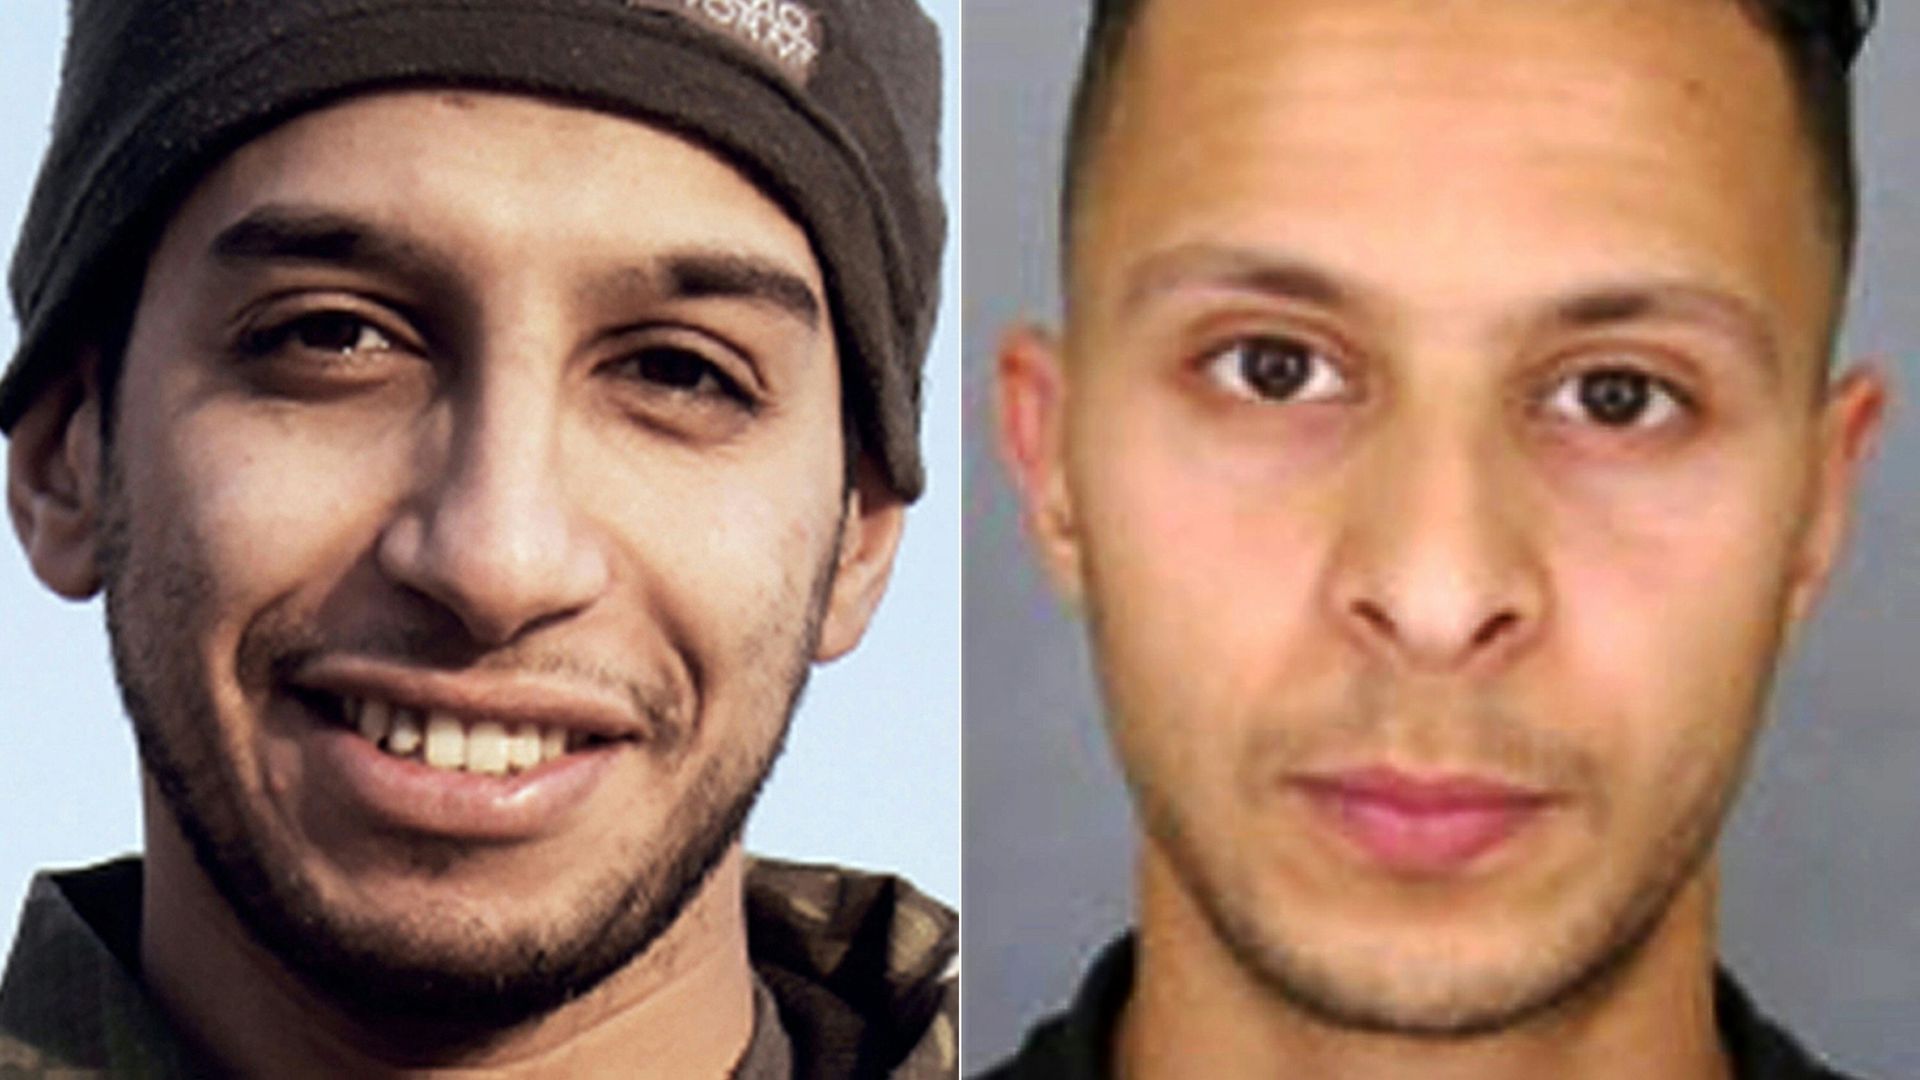 Un informateur avait fait état de plusieurs échanges directs entre Abdelhamid Abaaoud (à gauche) et Salah Abdeslam (à droite) dans les jours qui ont précédé l'opération de Verviers.